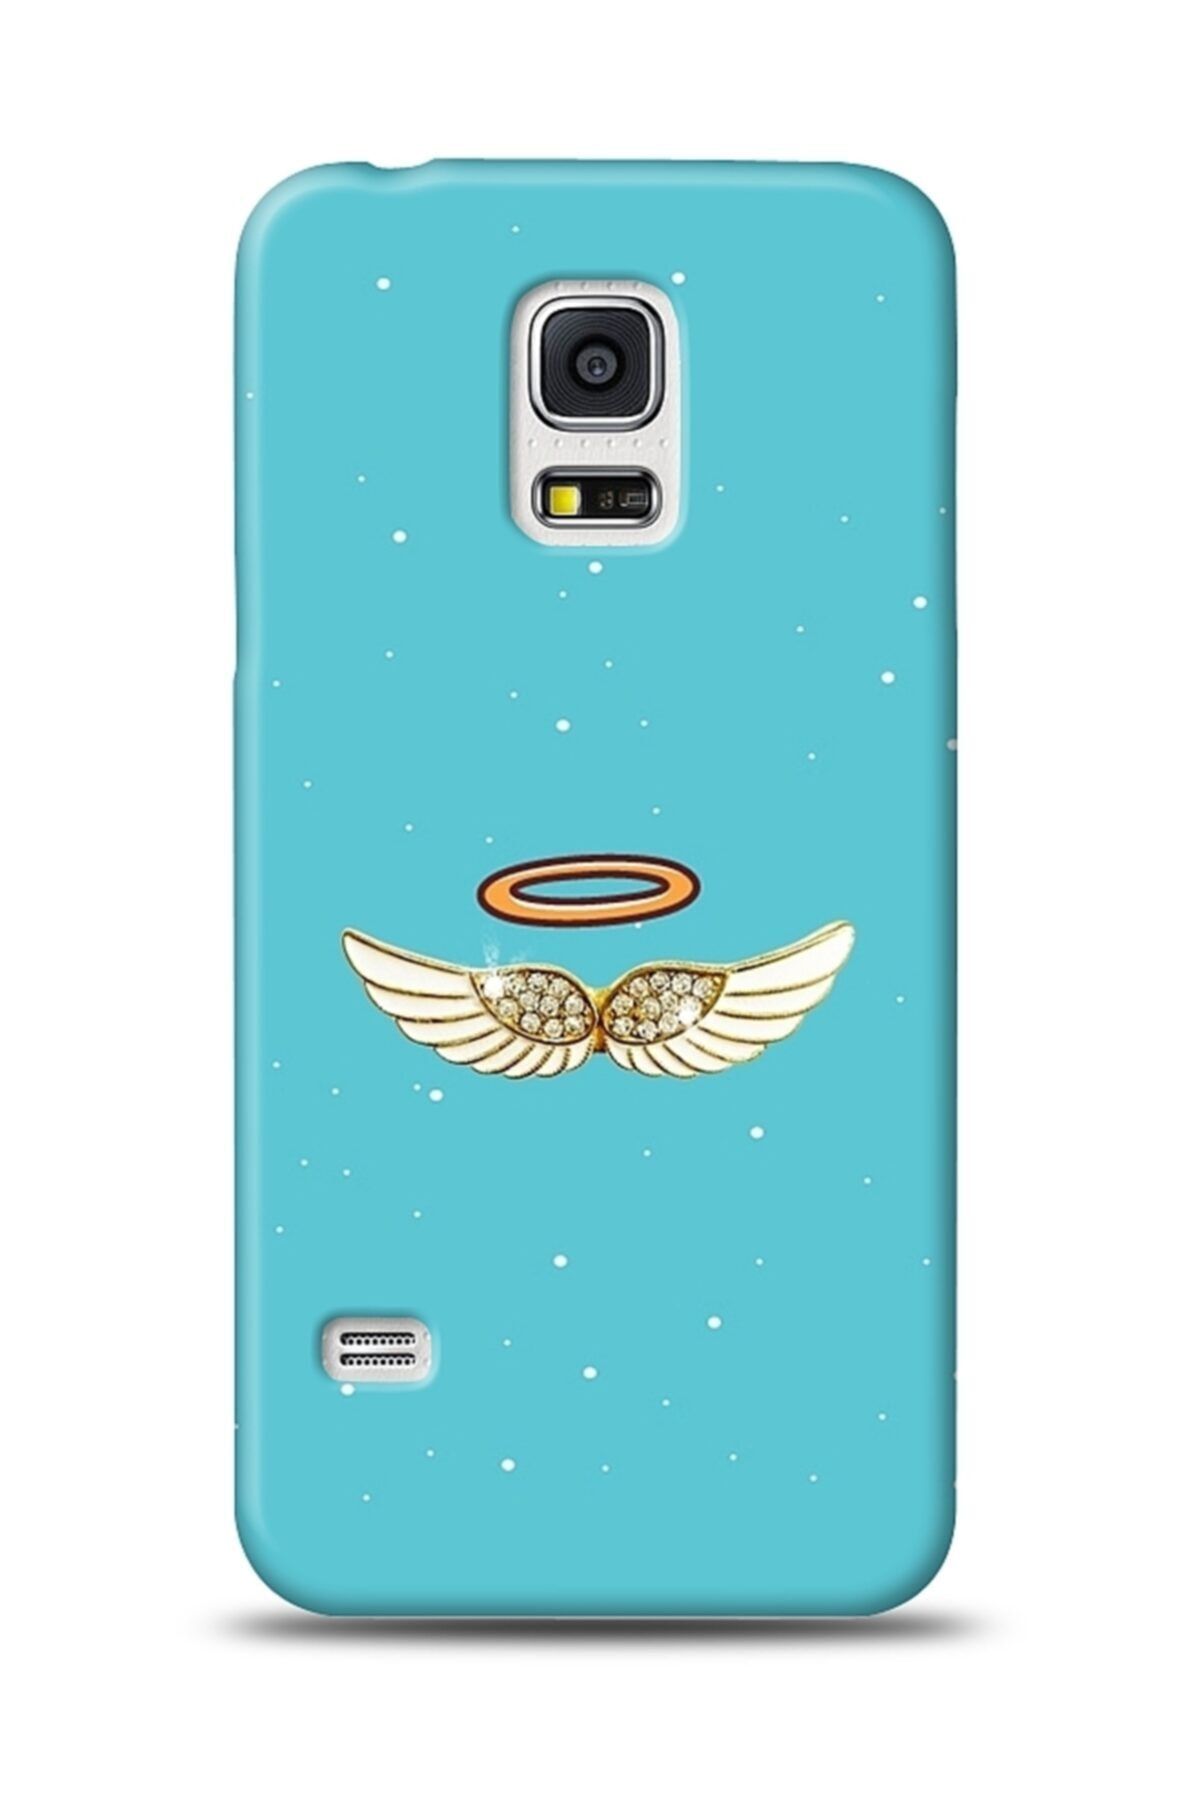 Mobilcadde Samsung Galaxy S5 Blue Angel Taşlı Resimli Kılıf